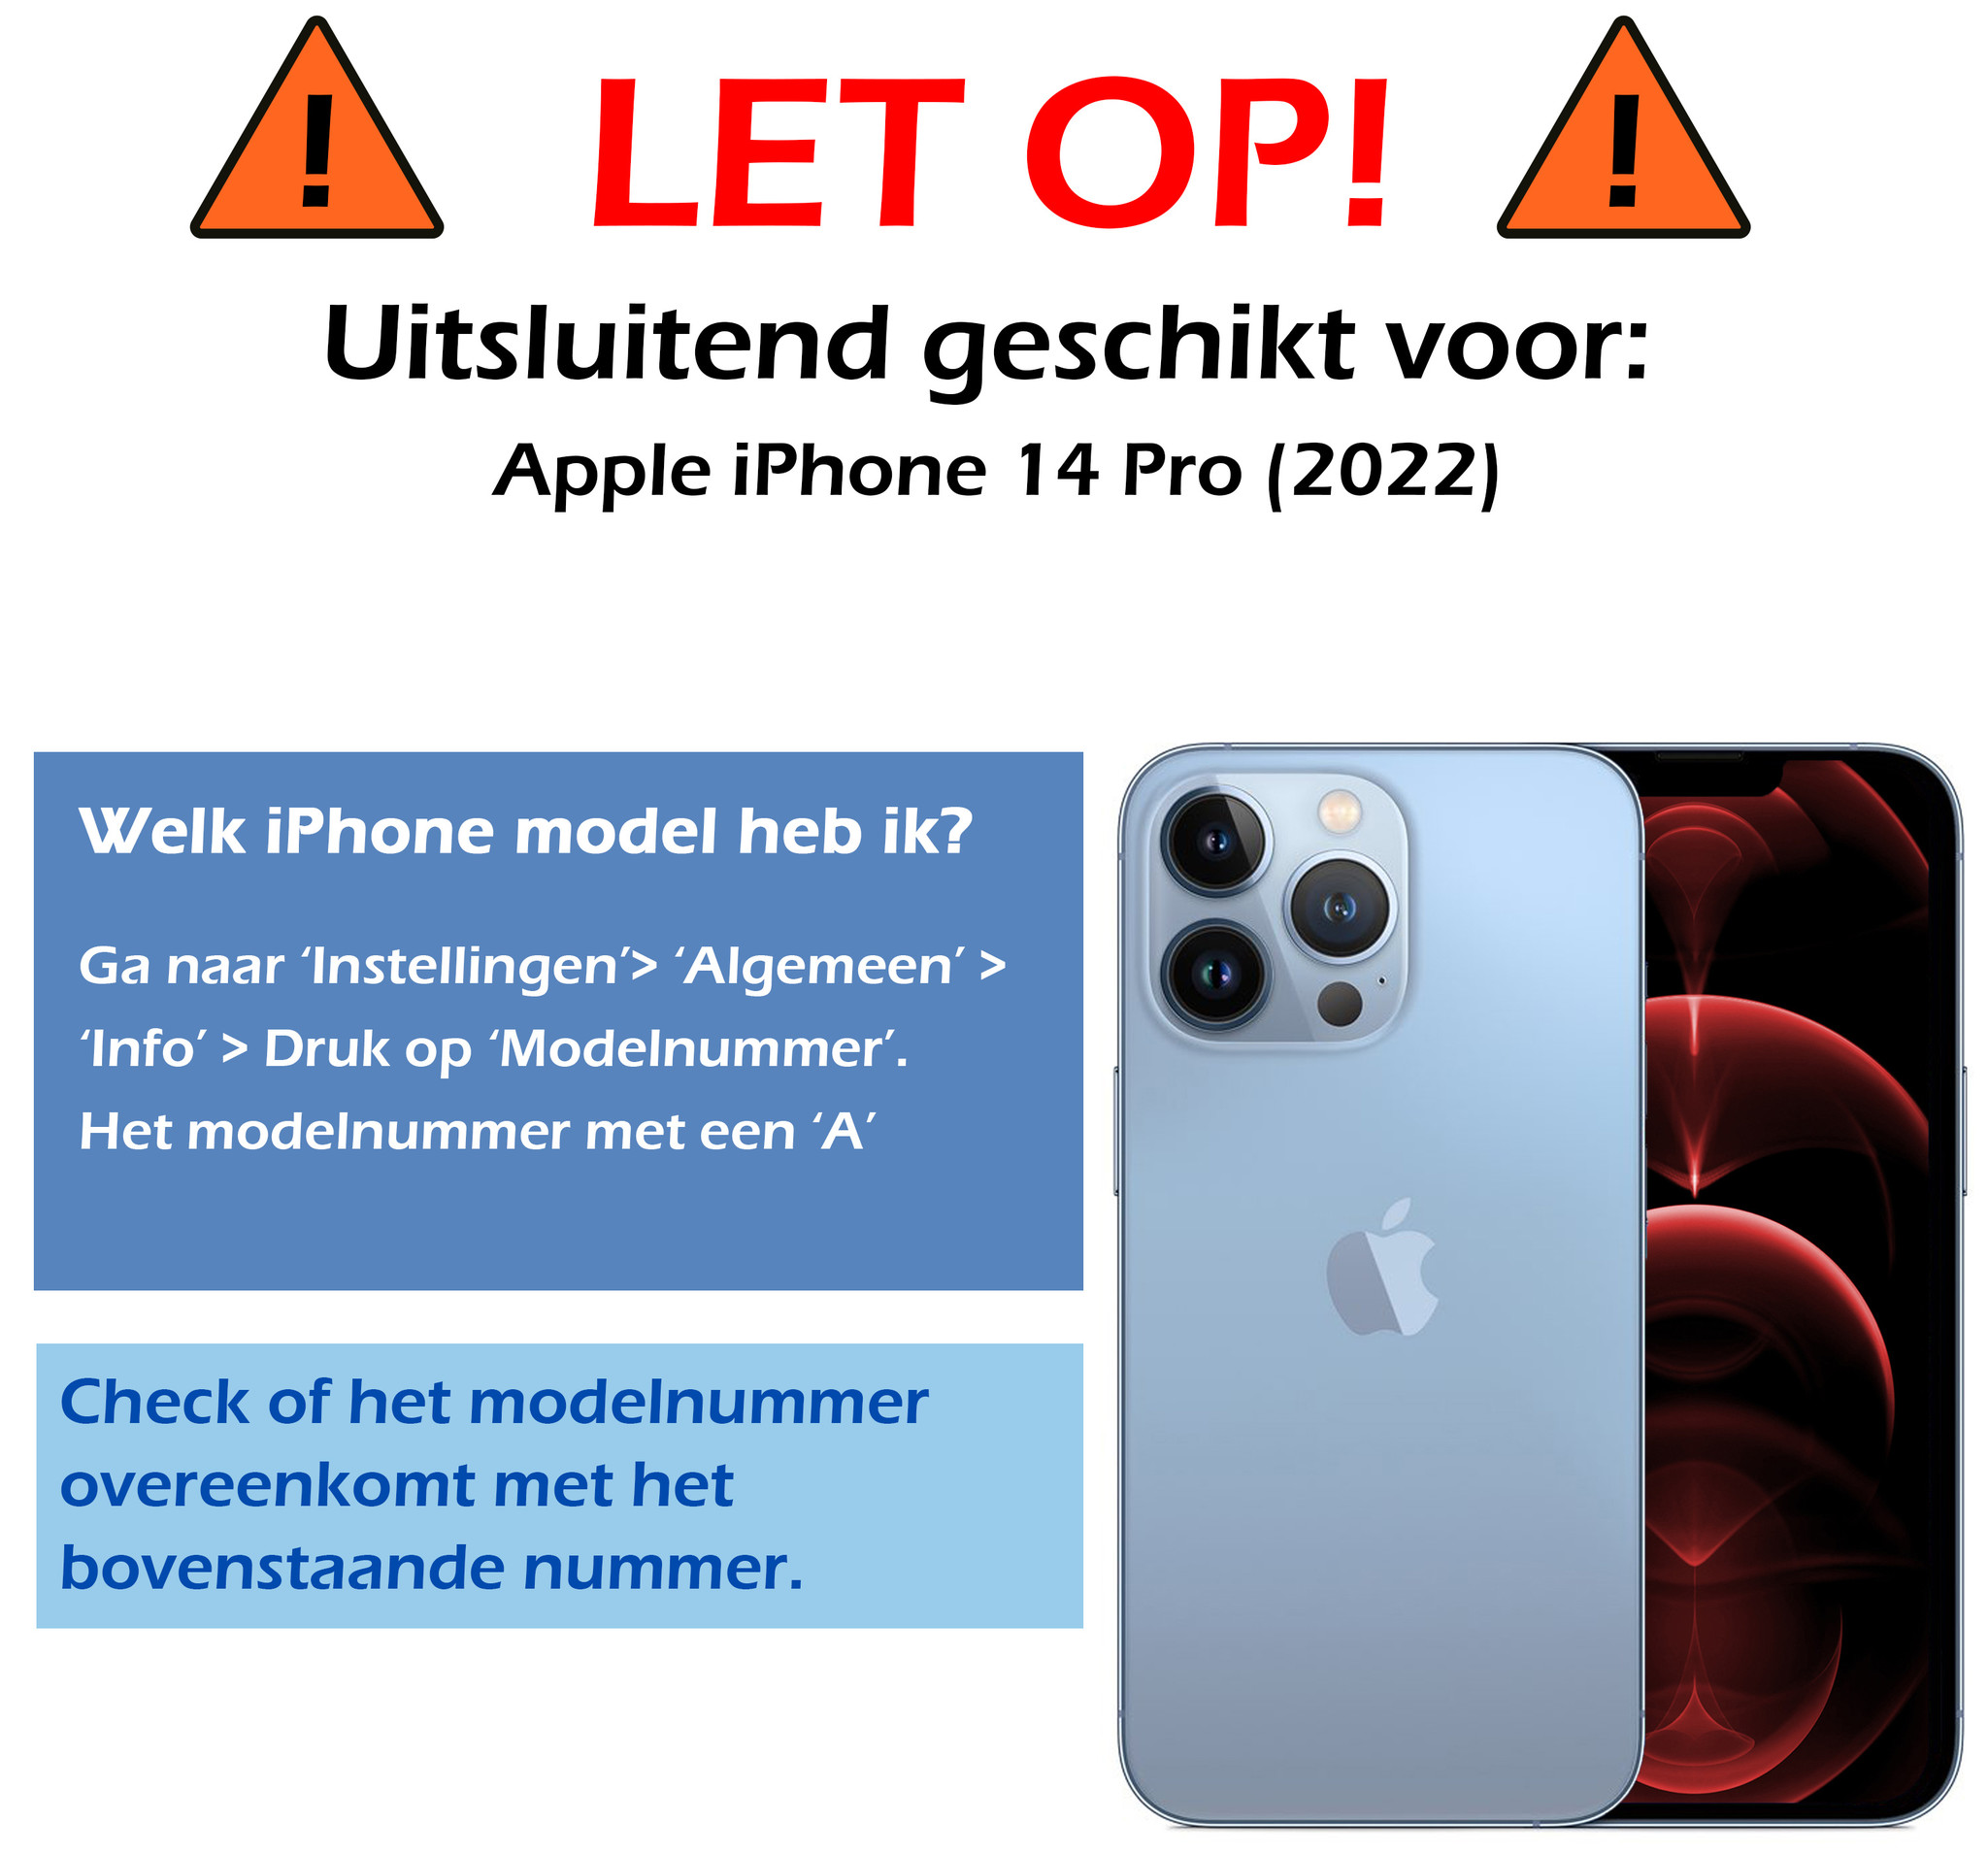 Nomfy Hoes voor iPhone 14 Pro Hoesje Siliconen Case Back Cover - Hoes voor iPhone 14 Pro Hoes Cover Silicone - Grijs - 2X